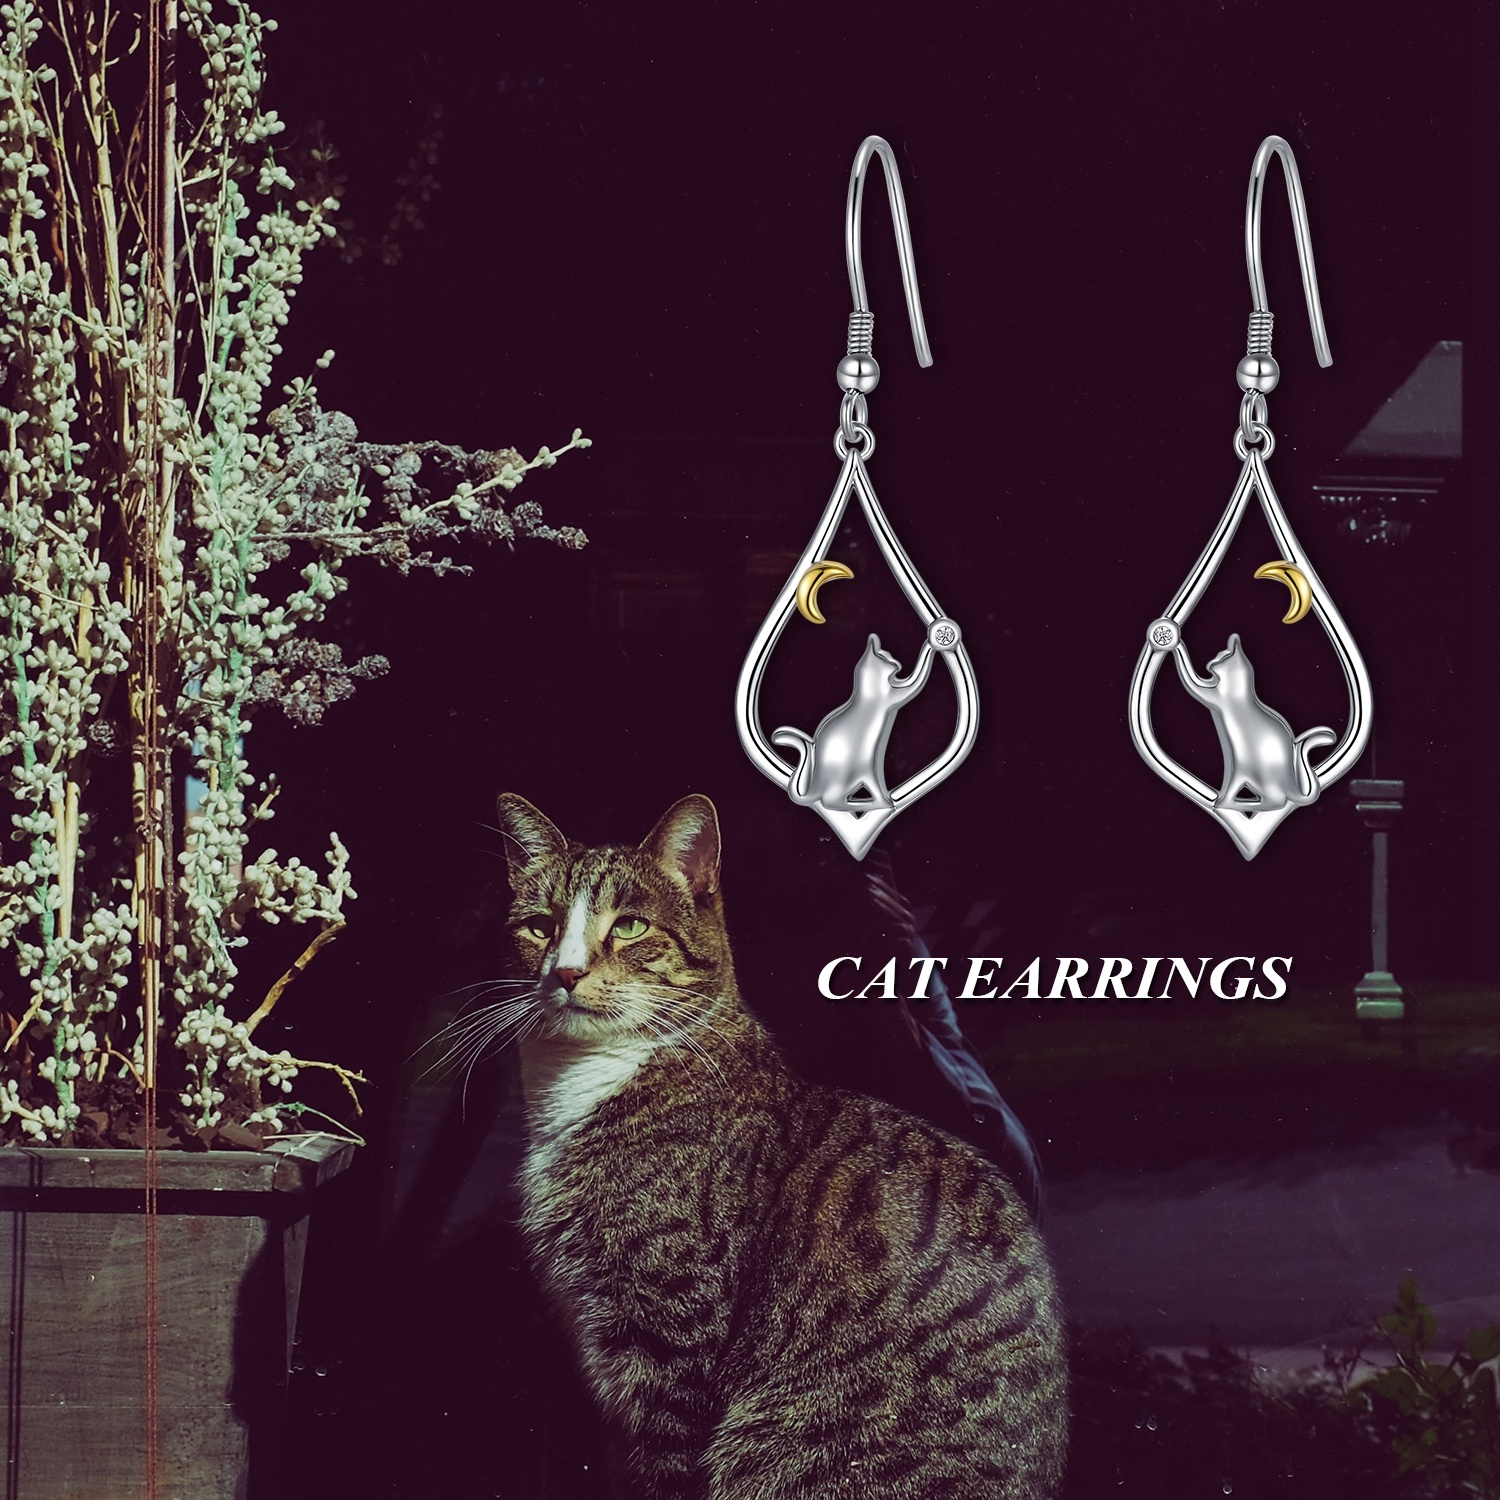 16297696080827ba6f6 - Cat Earrings Sterling Silver Cat Moon Dangle Drop Hooks Earrings Cute Animal Jewelry Cat Lovers Gifts for Women Teens Birthday